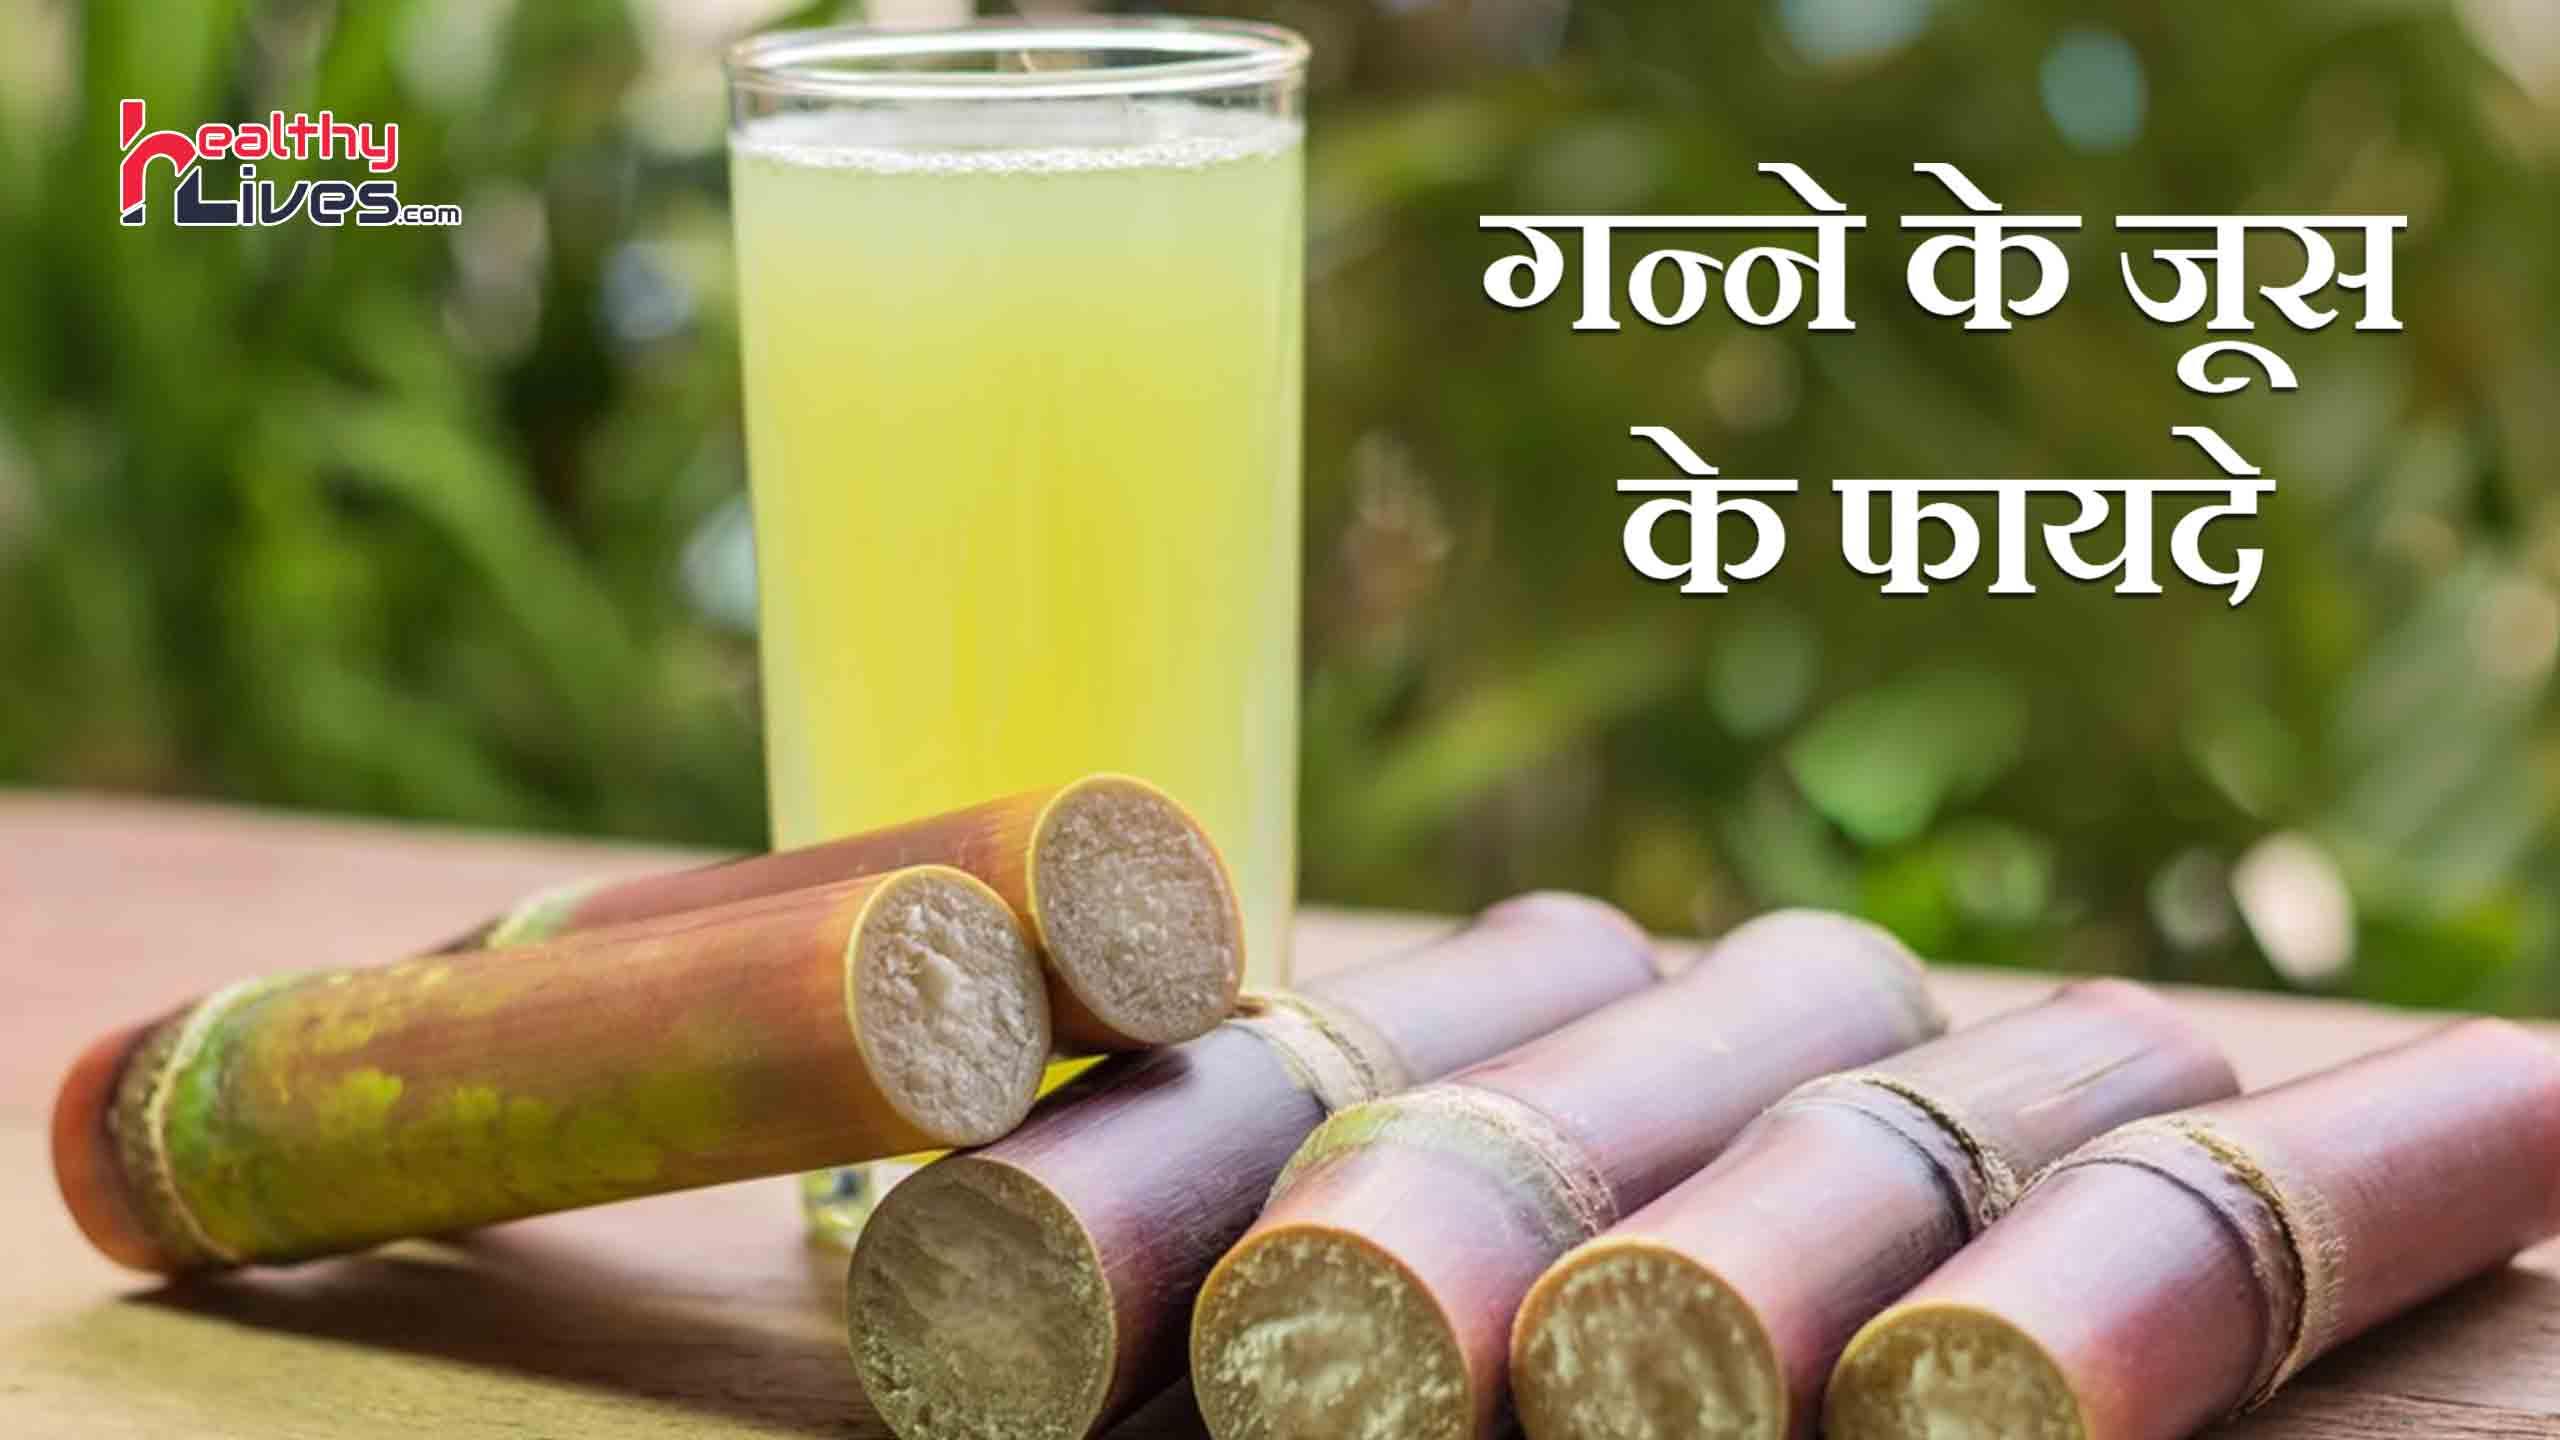 Sugarcane Juice Benefits in Hindi: गर्मियों में करे गन्ने के रस का सेवन और रहे तरोताजा